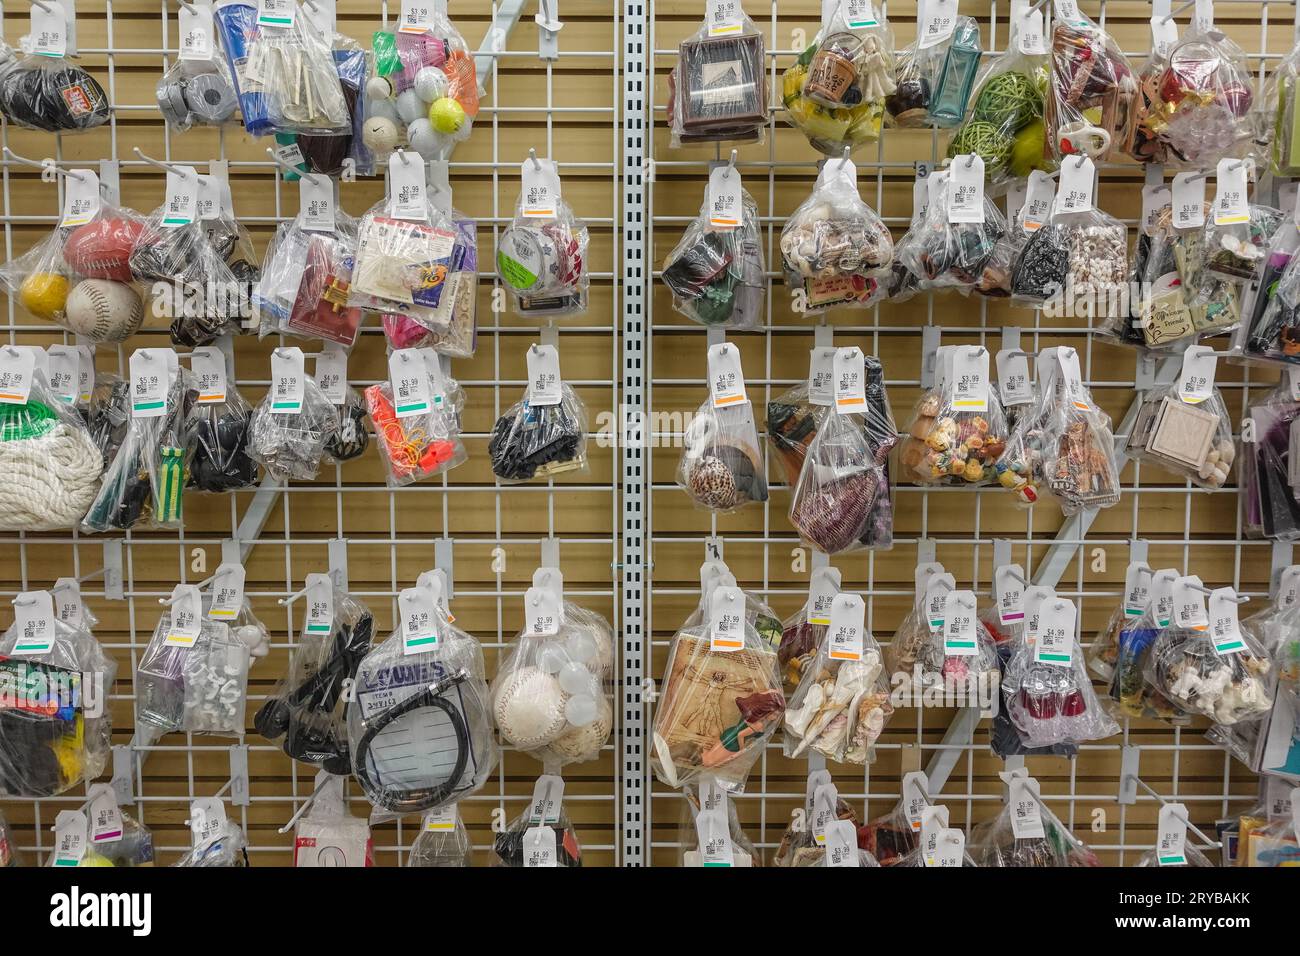 piccoli oggetti casuali in un sacchetto di plastica, appesi a un rack, all'interno di un negozio di articoli da regalo Foto Stock